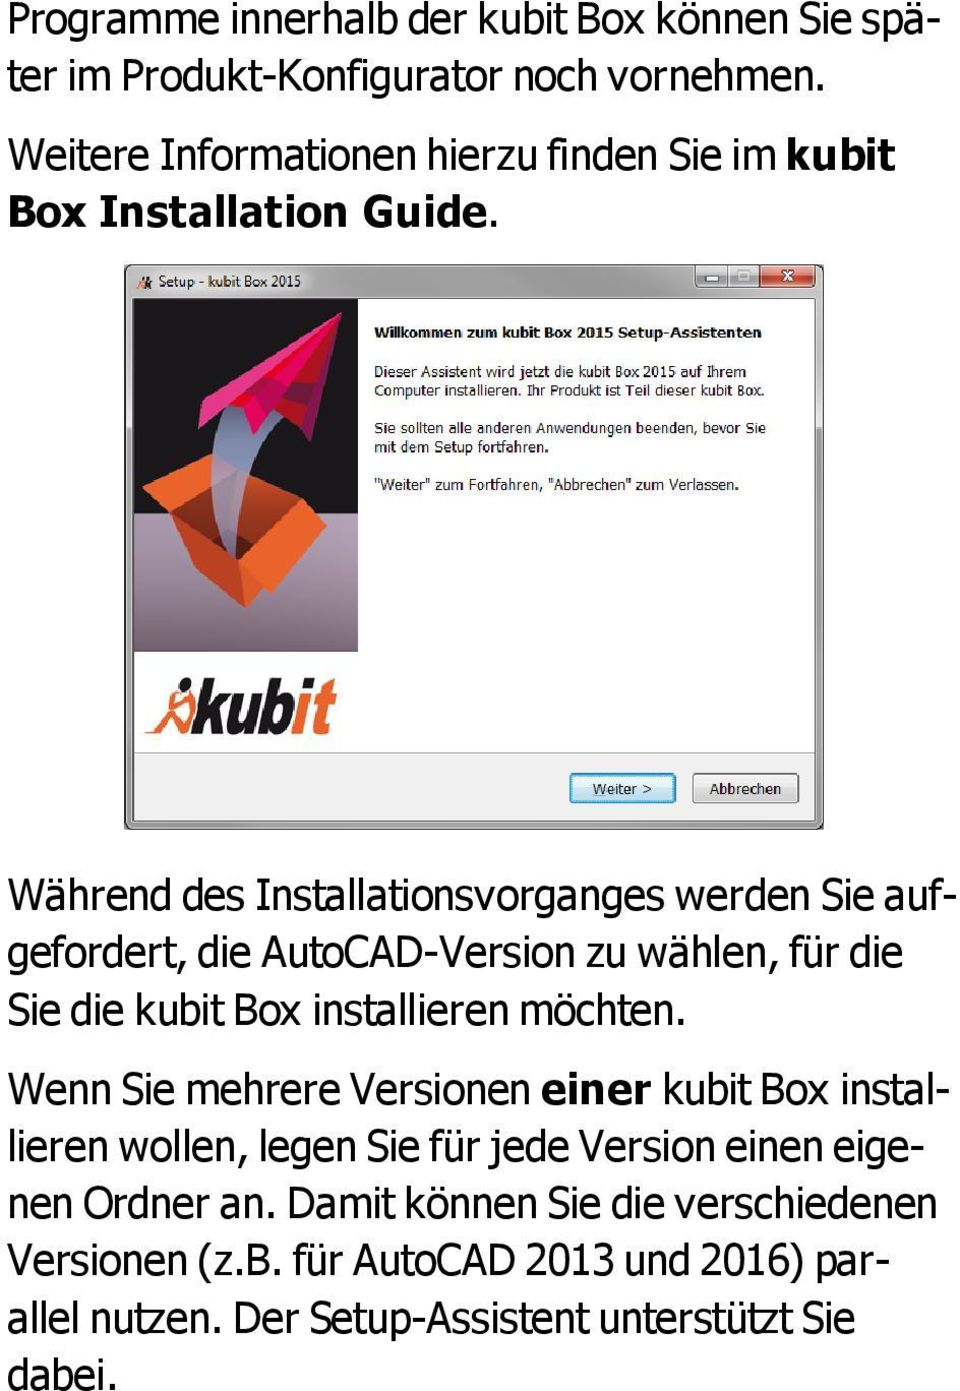 Während des Installationsvorganges werden Sie aufgefordert, die AutoCAD-Version zu wählen, für die Sie die kubit Box installieren möchten.